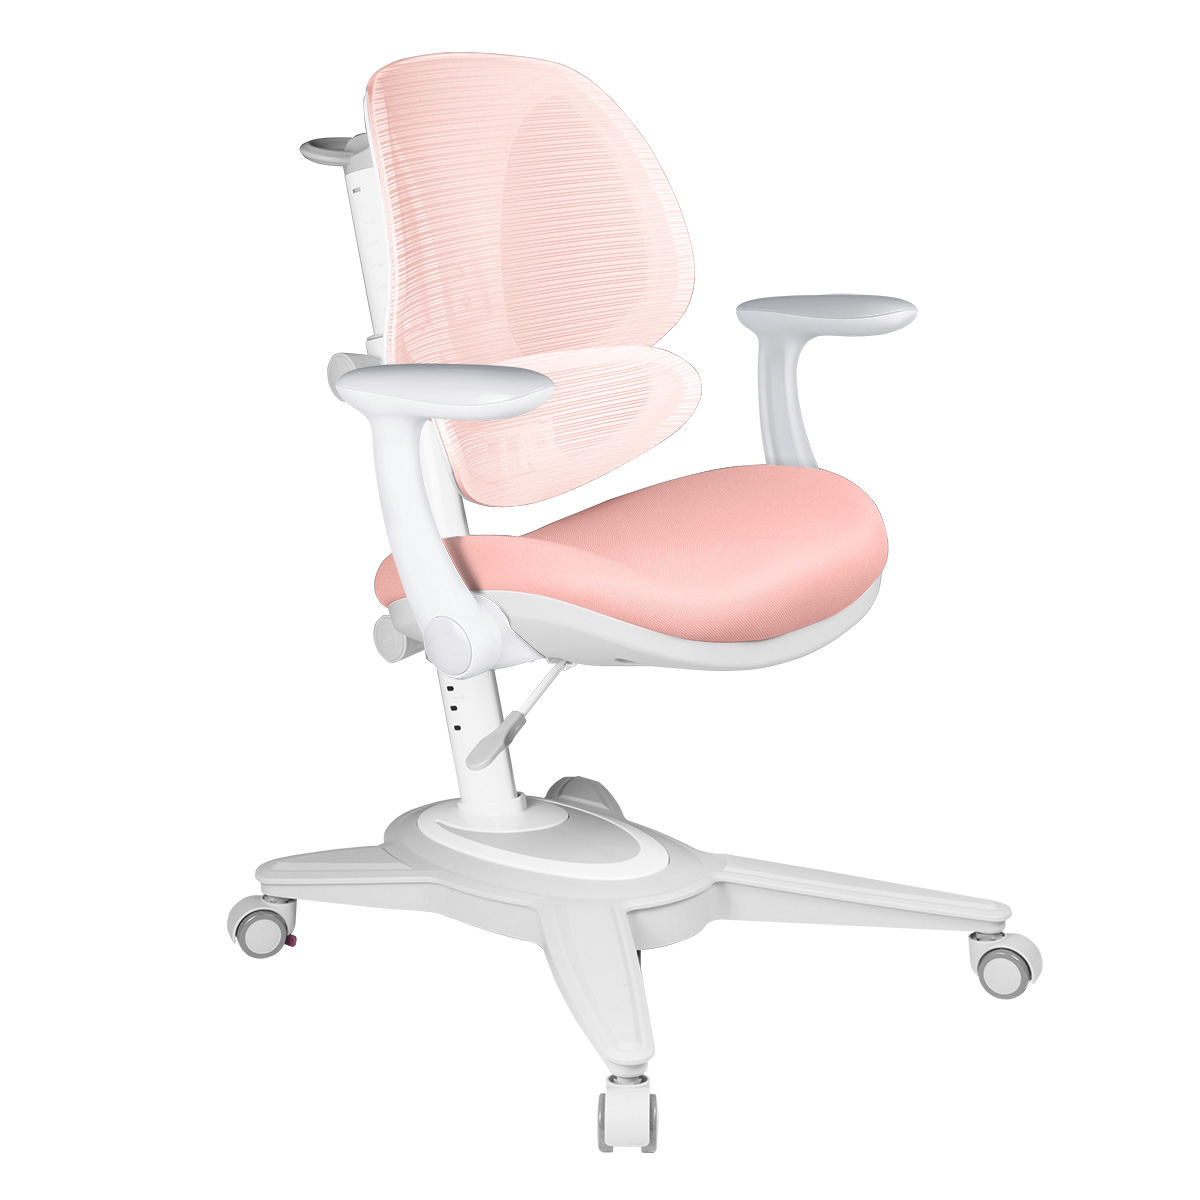 Детское кресло Anatomica Funken с подлокотниками, розовый детское кресло anatomica arriva с подлокотниками и подставкой для ног оранжевый